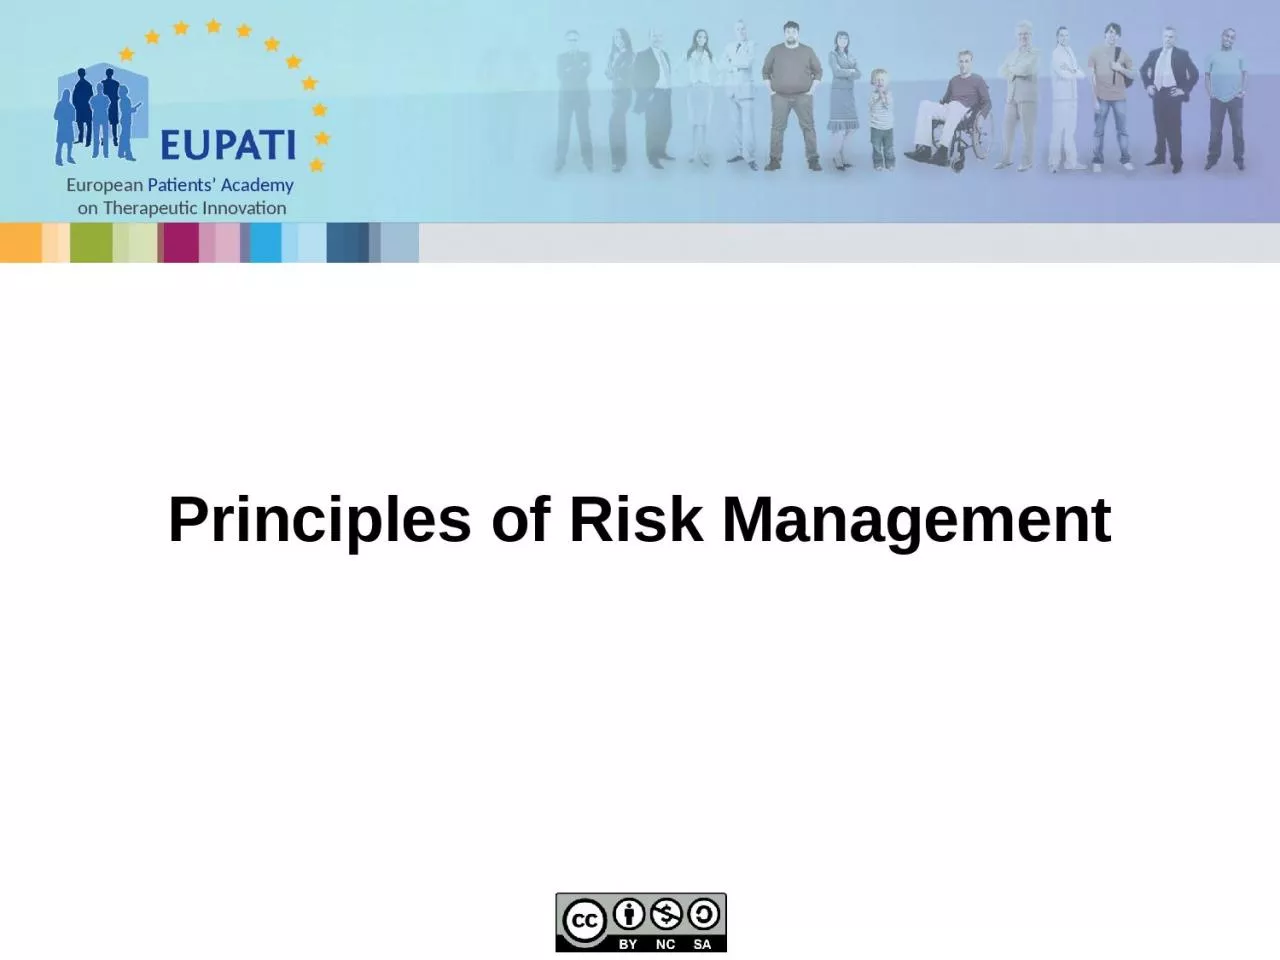 Principles of Risk Management